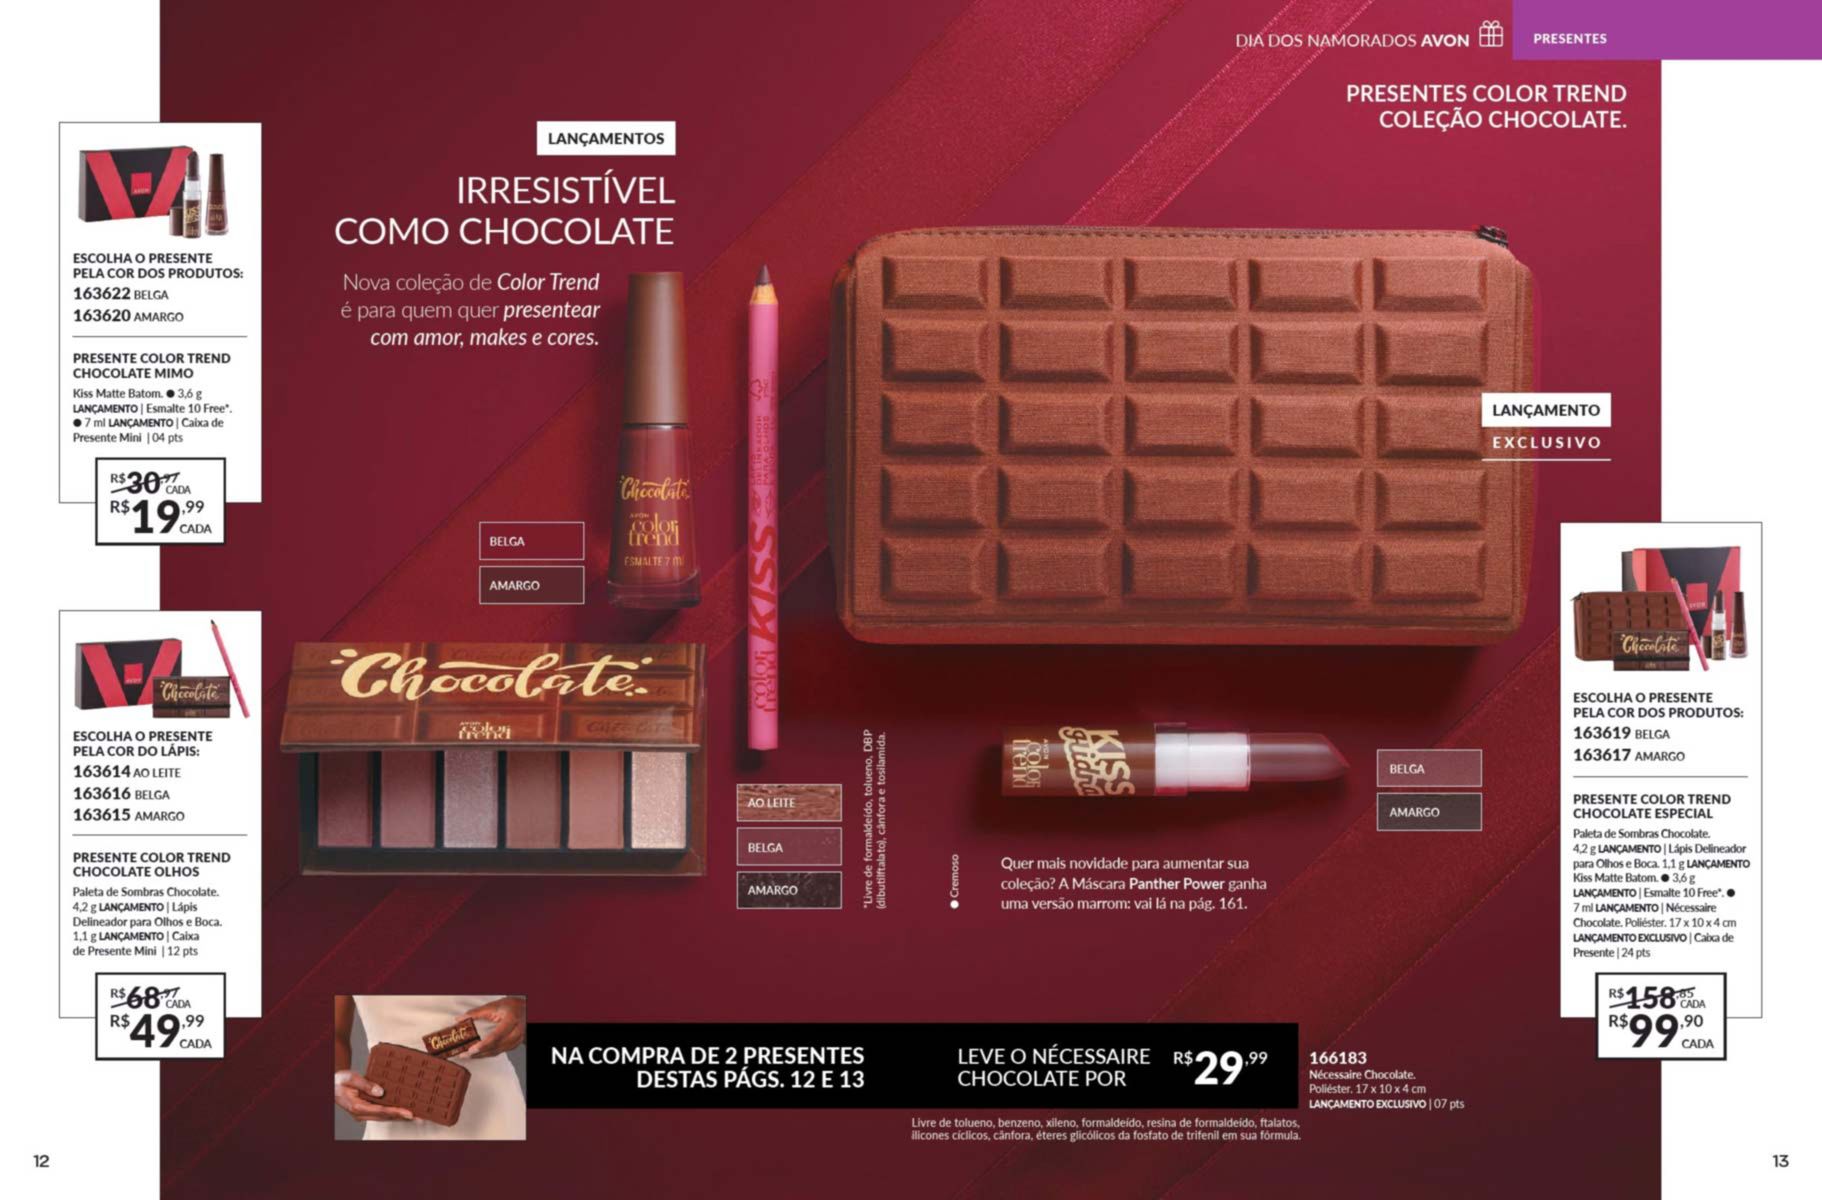 Presentes da coleção Color Trend Chocolate